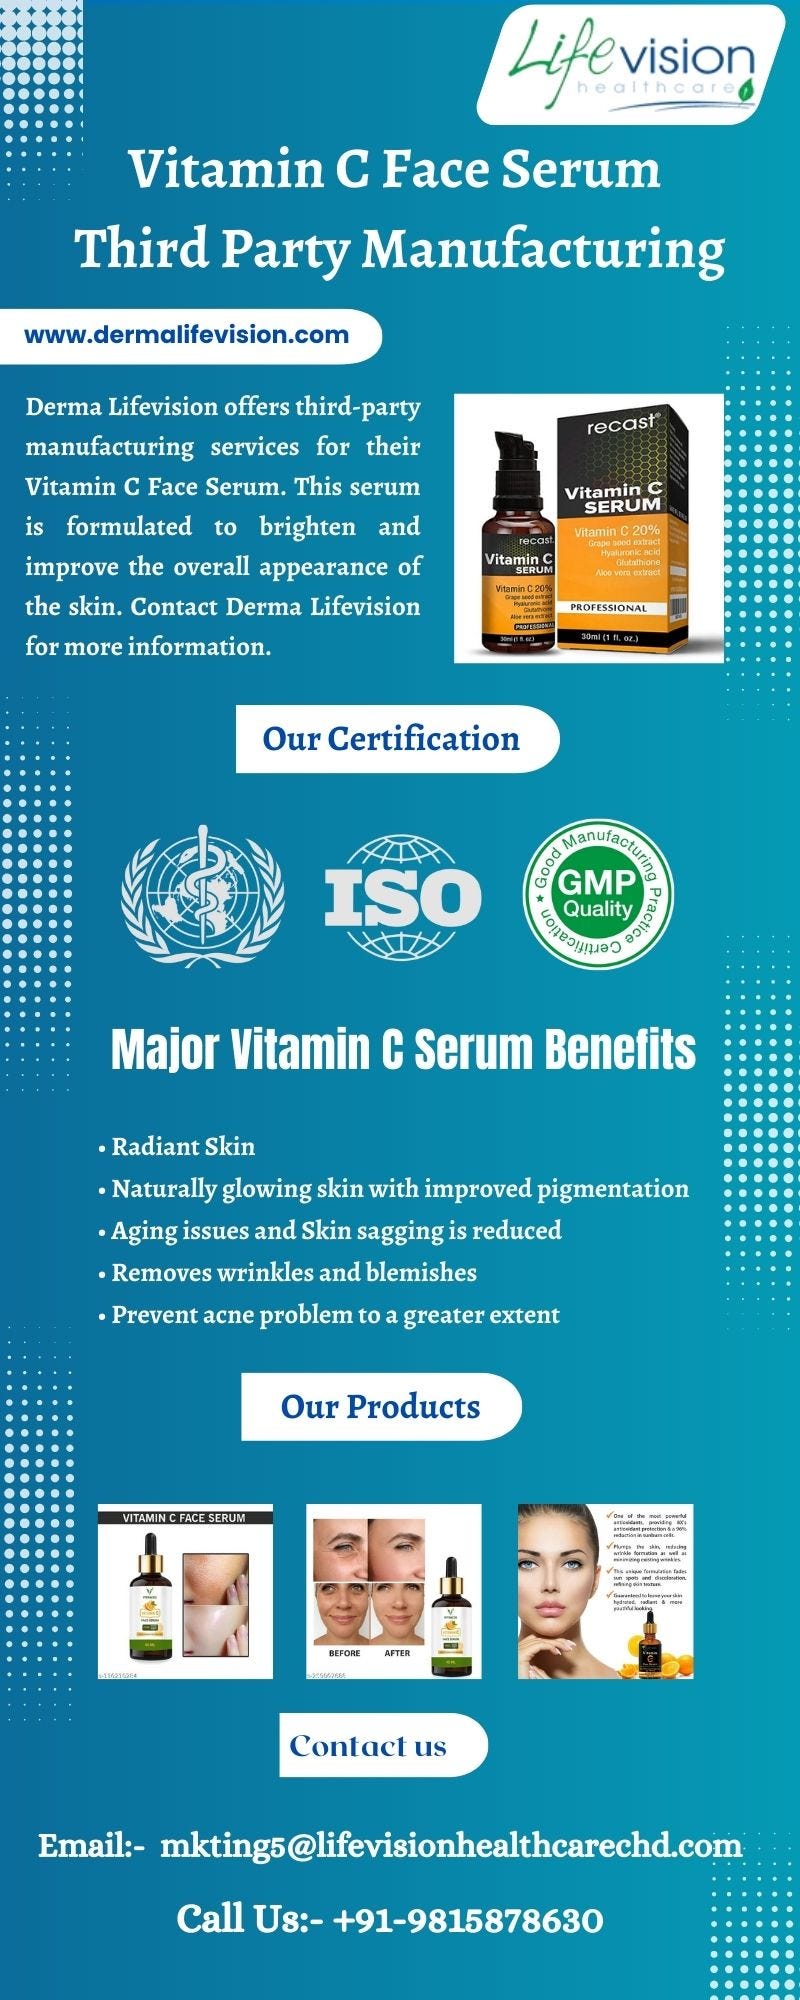 Vitamin C Face Serum Third Party Manufacturing Derma Lifevision Medium